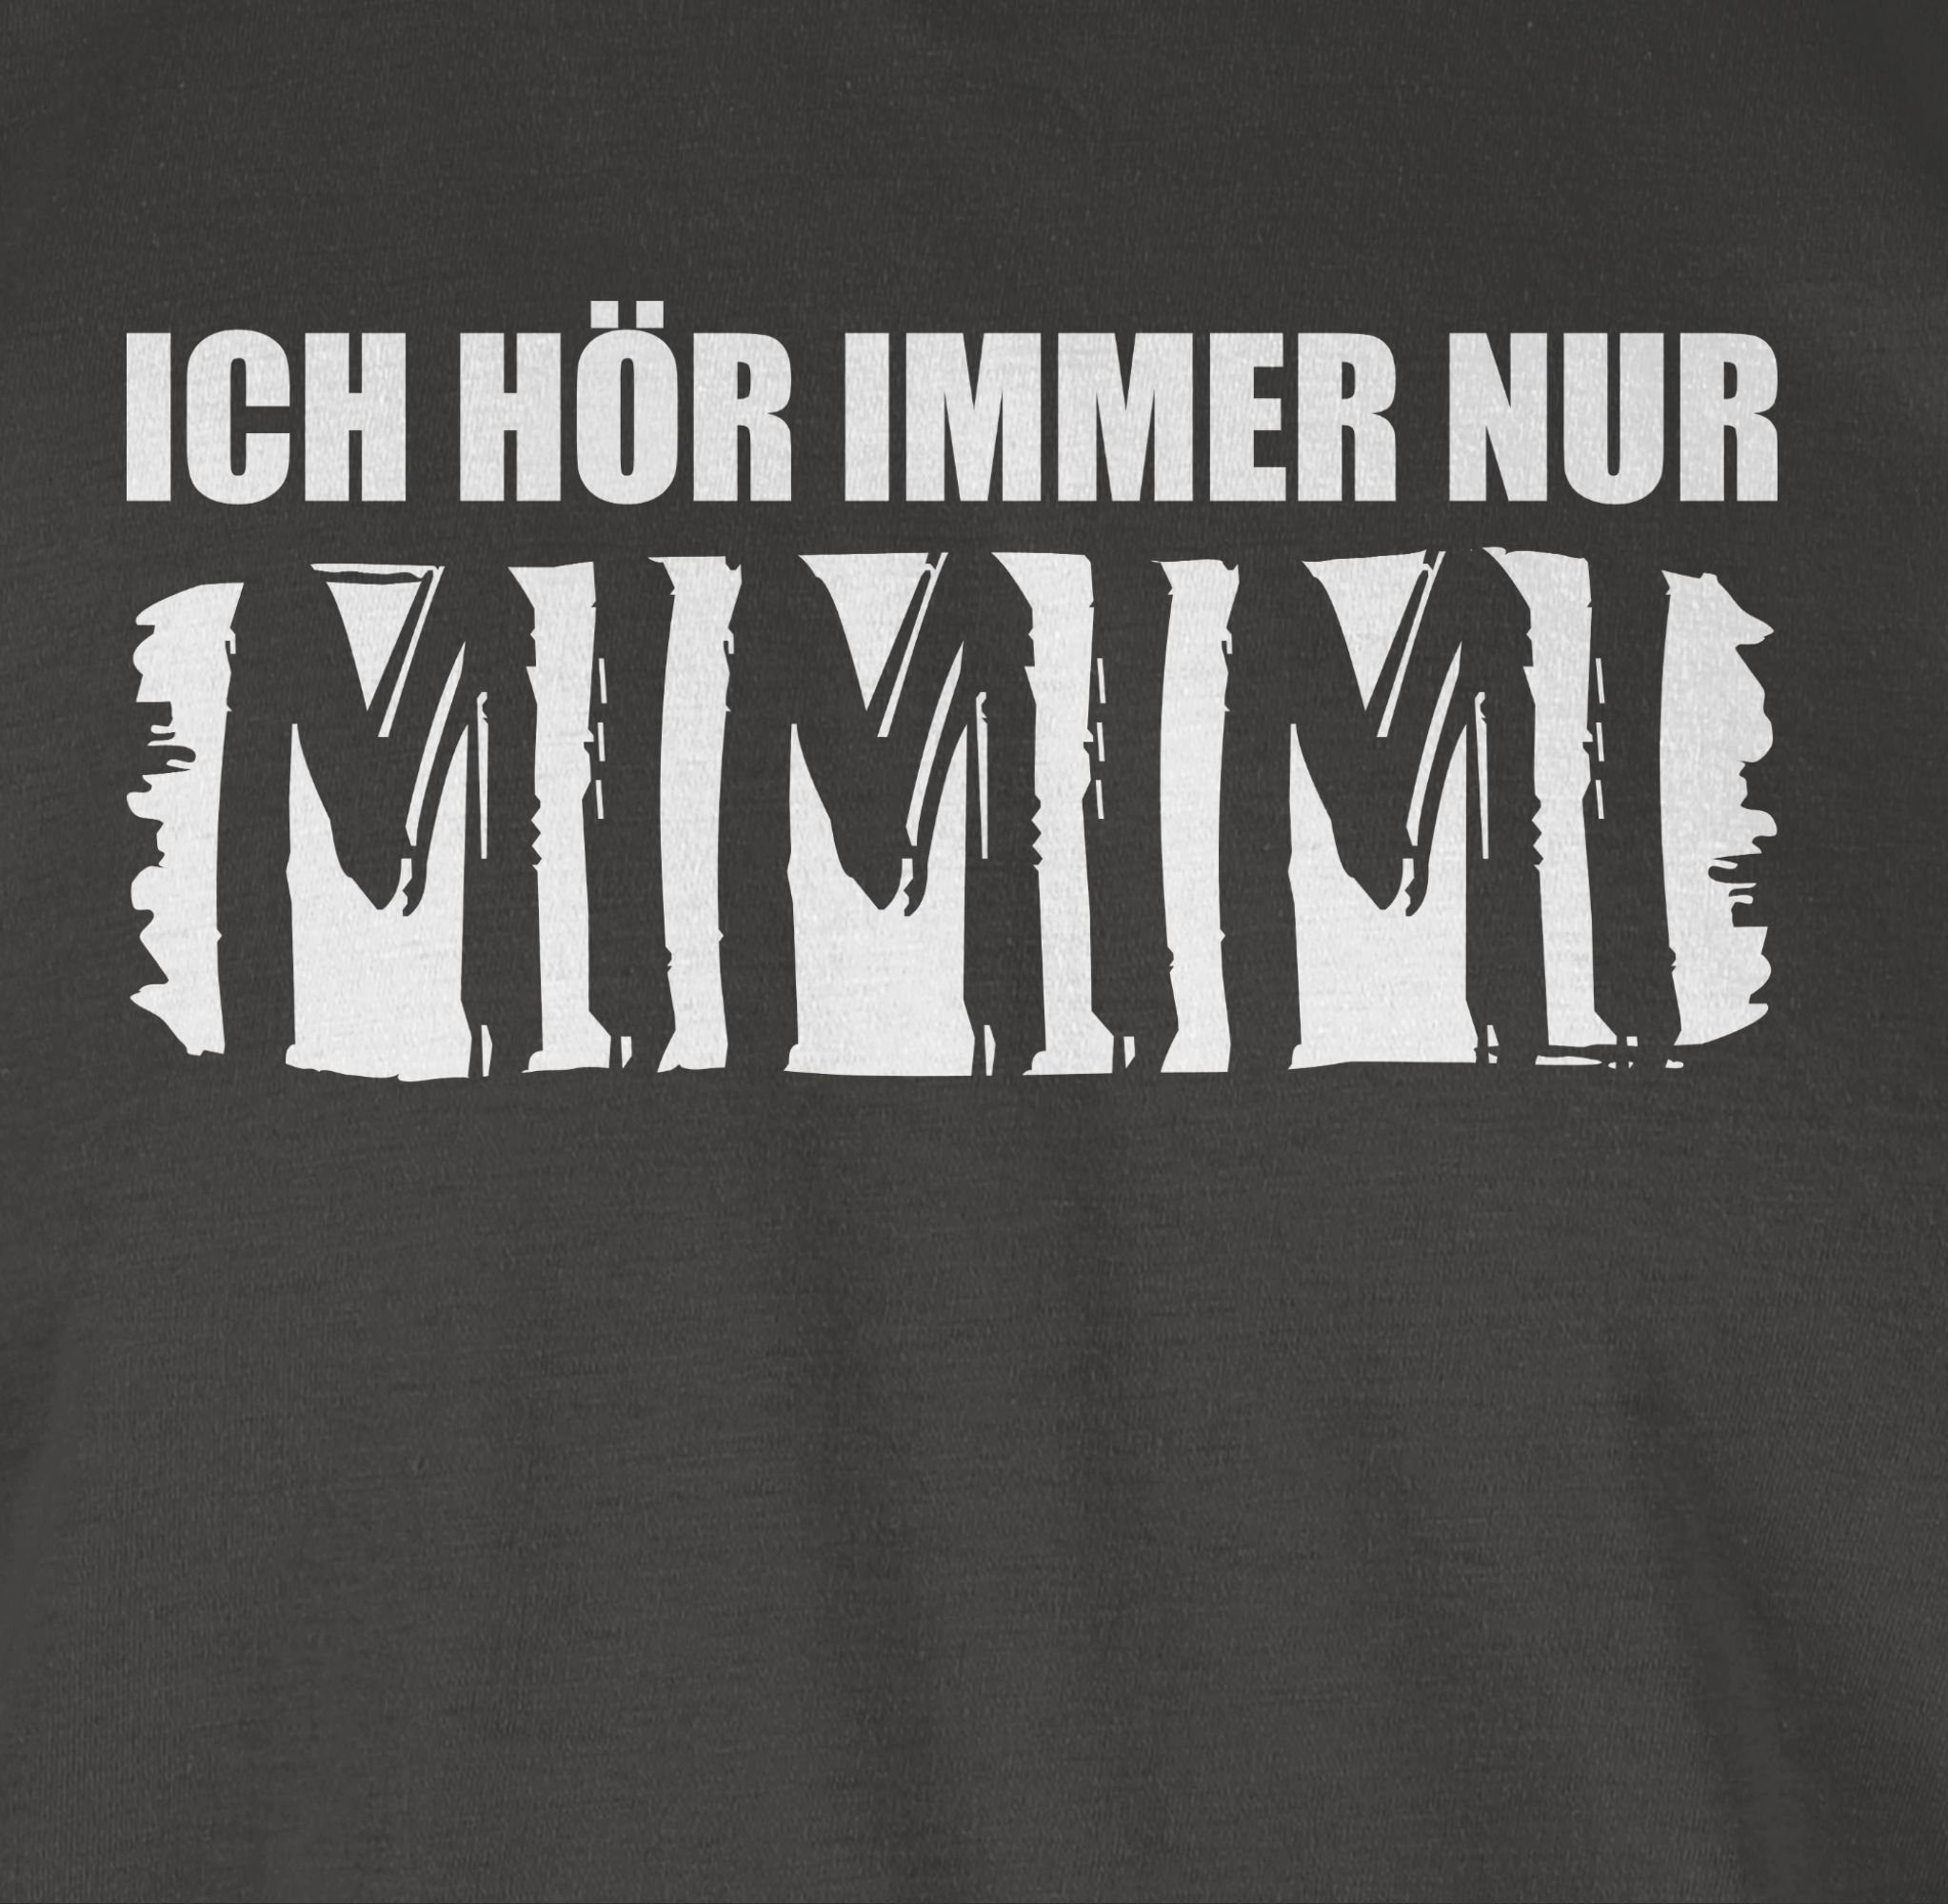 nur Sprüche Spruch Dunkelgrau Shirtracer Statement MIMIMI 03 T-Shirt mit Höre